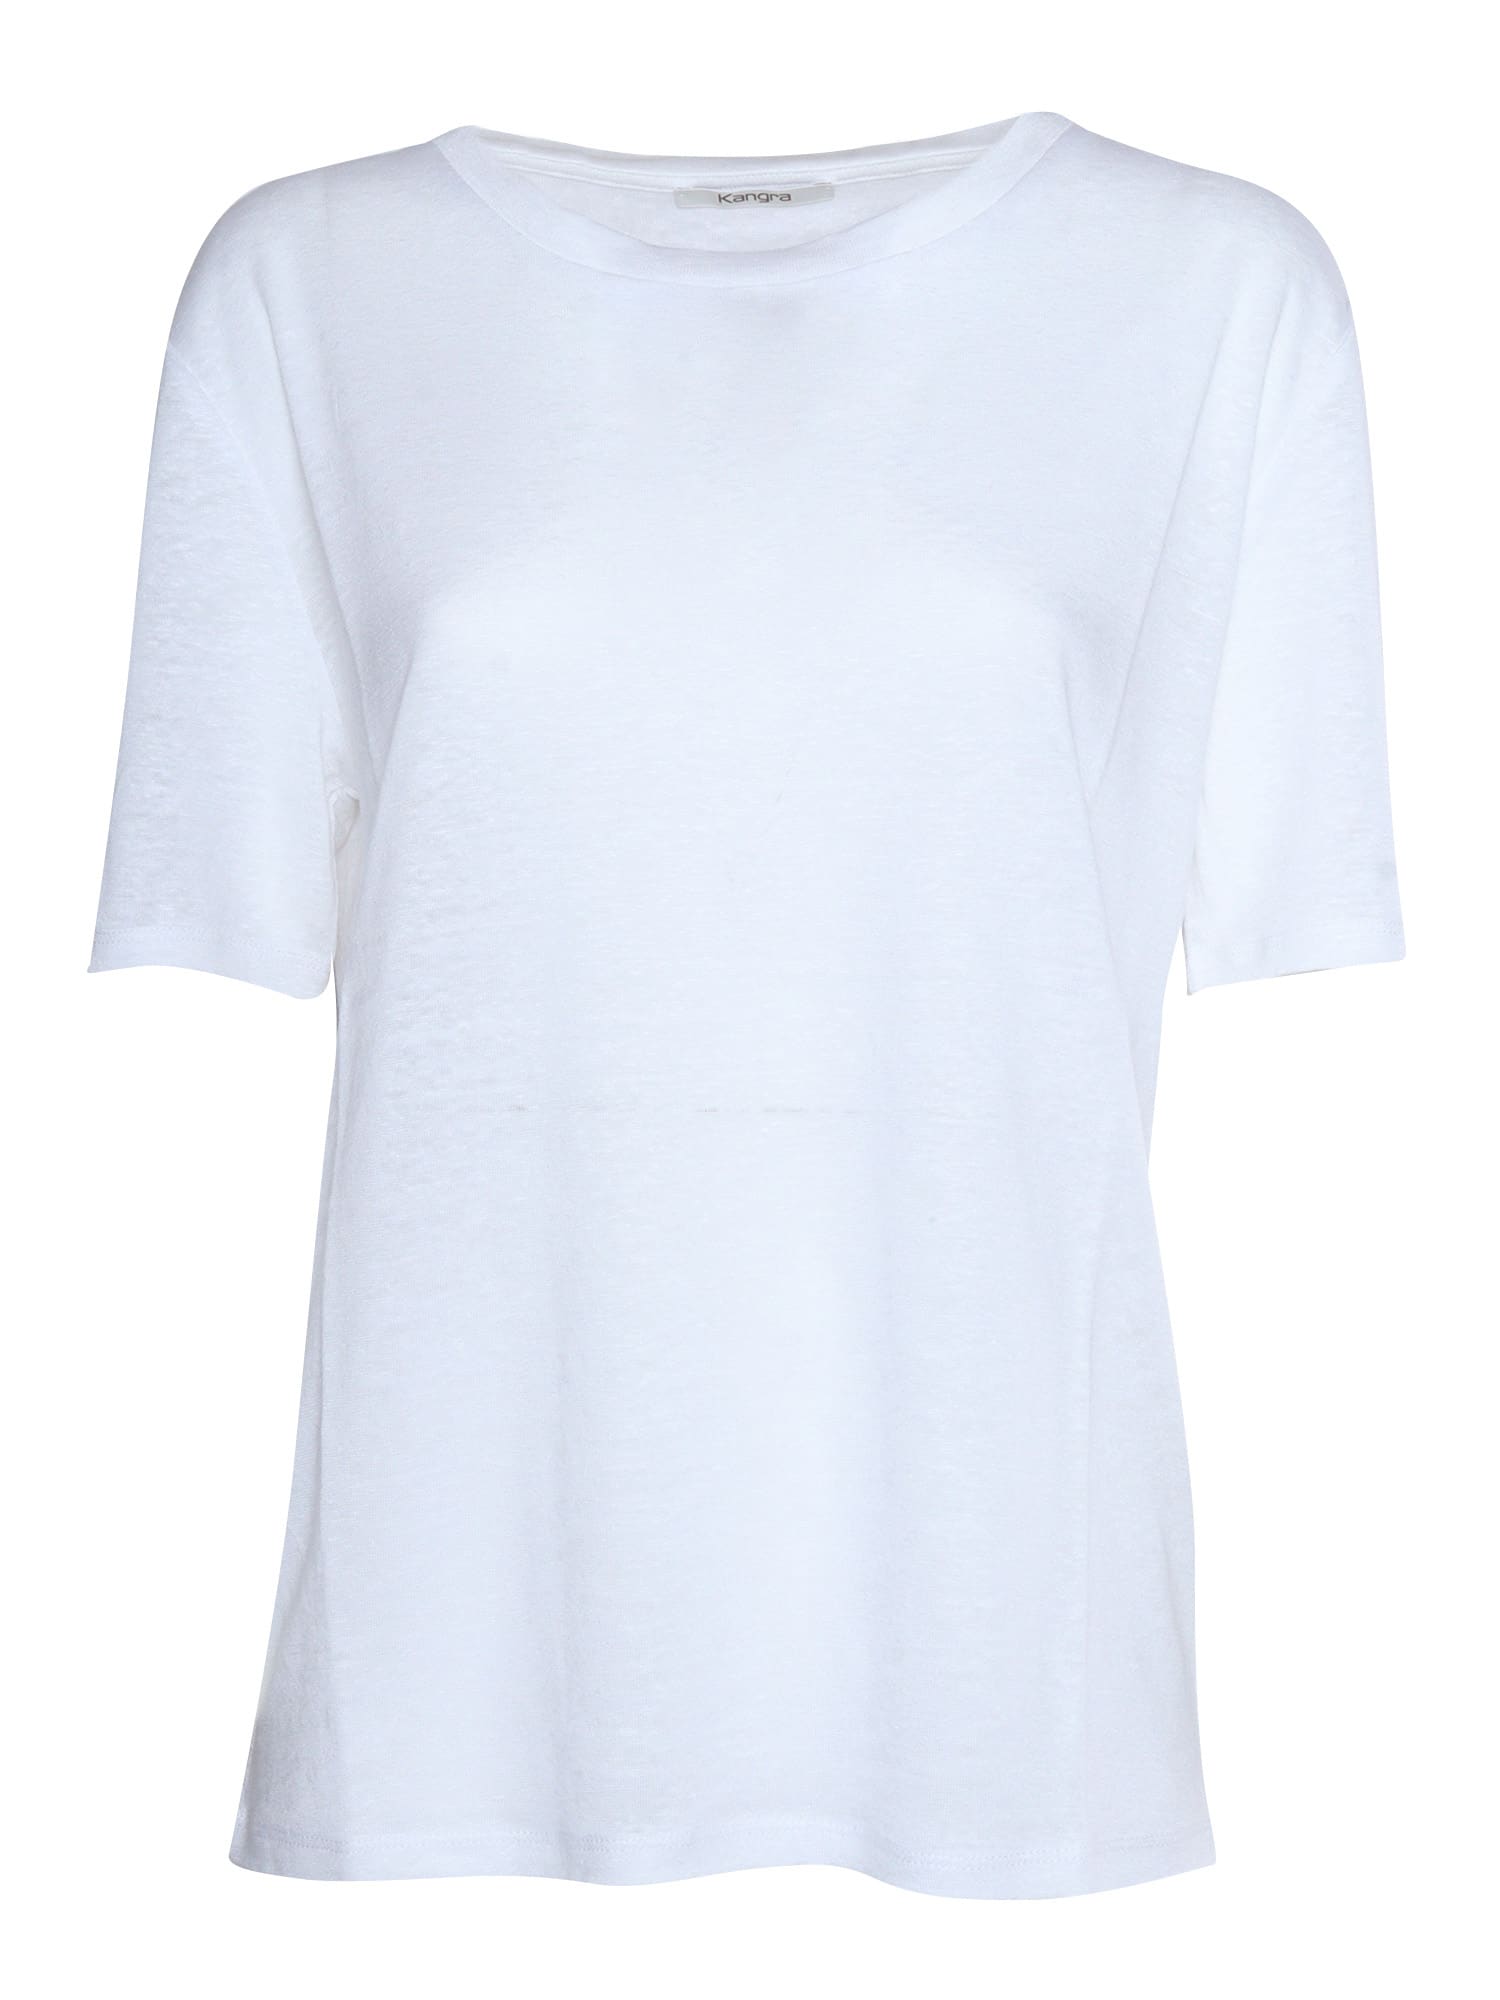 Kangra White T-shirt